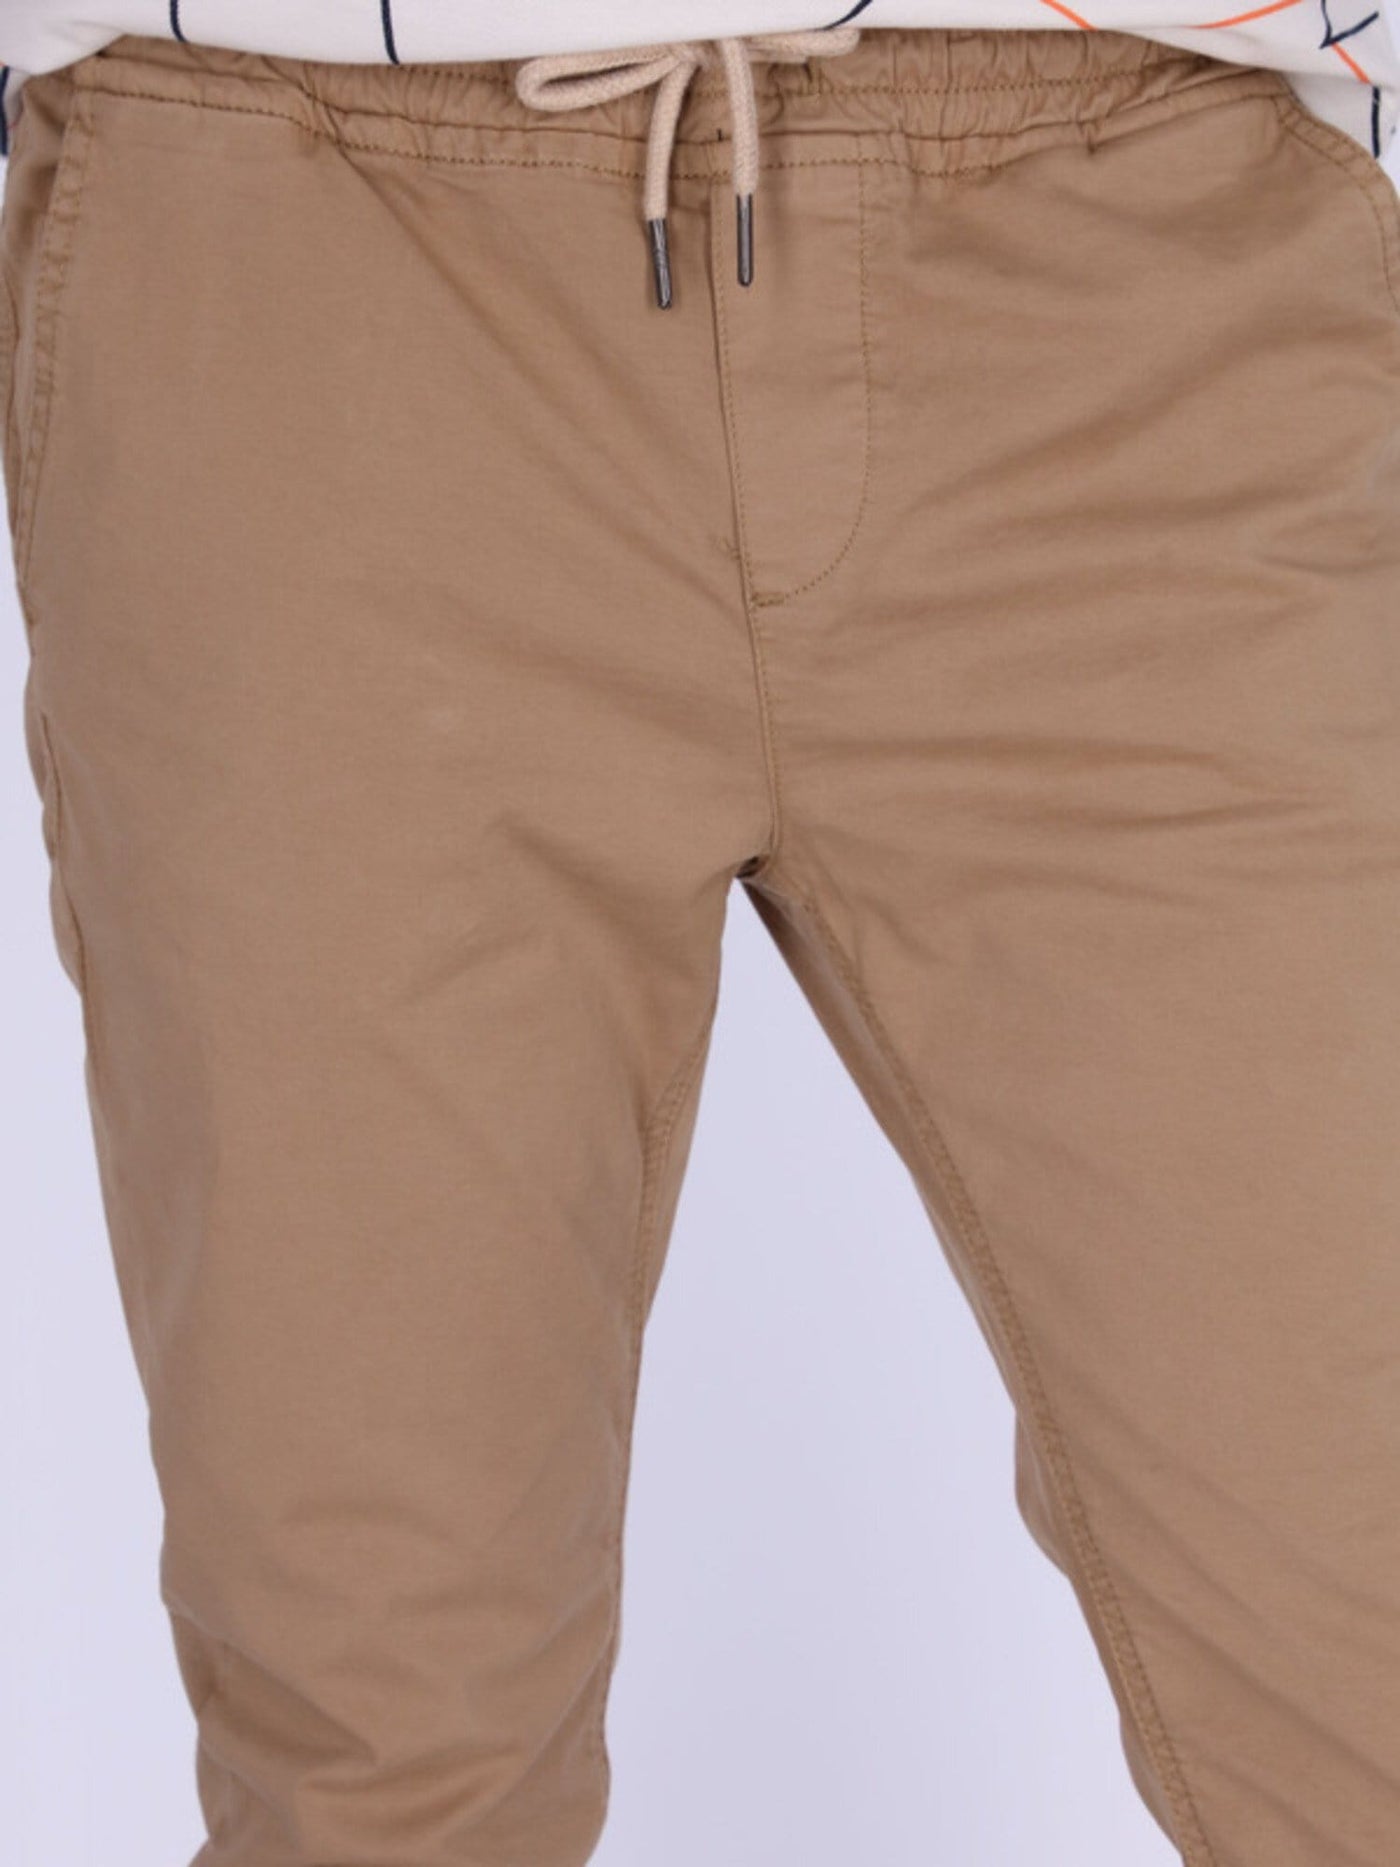 OR Pants & Shorts Jogger Pants with Drawstring